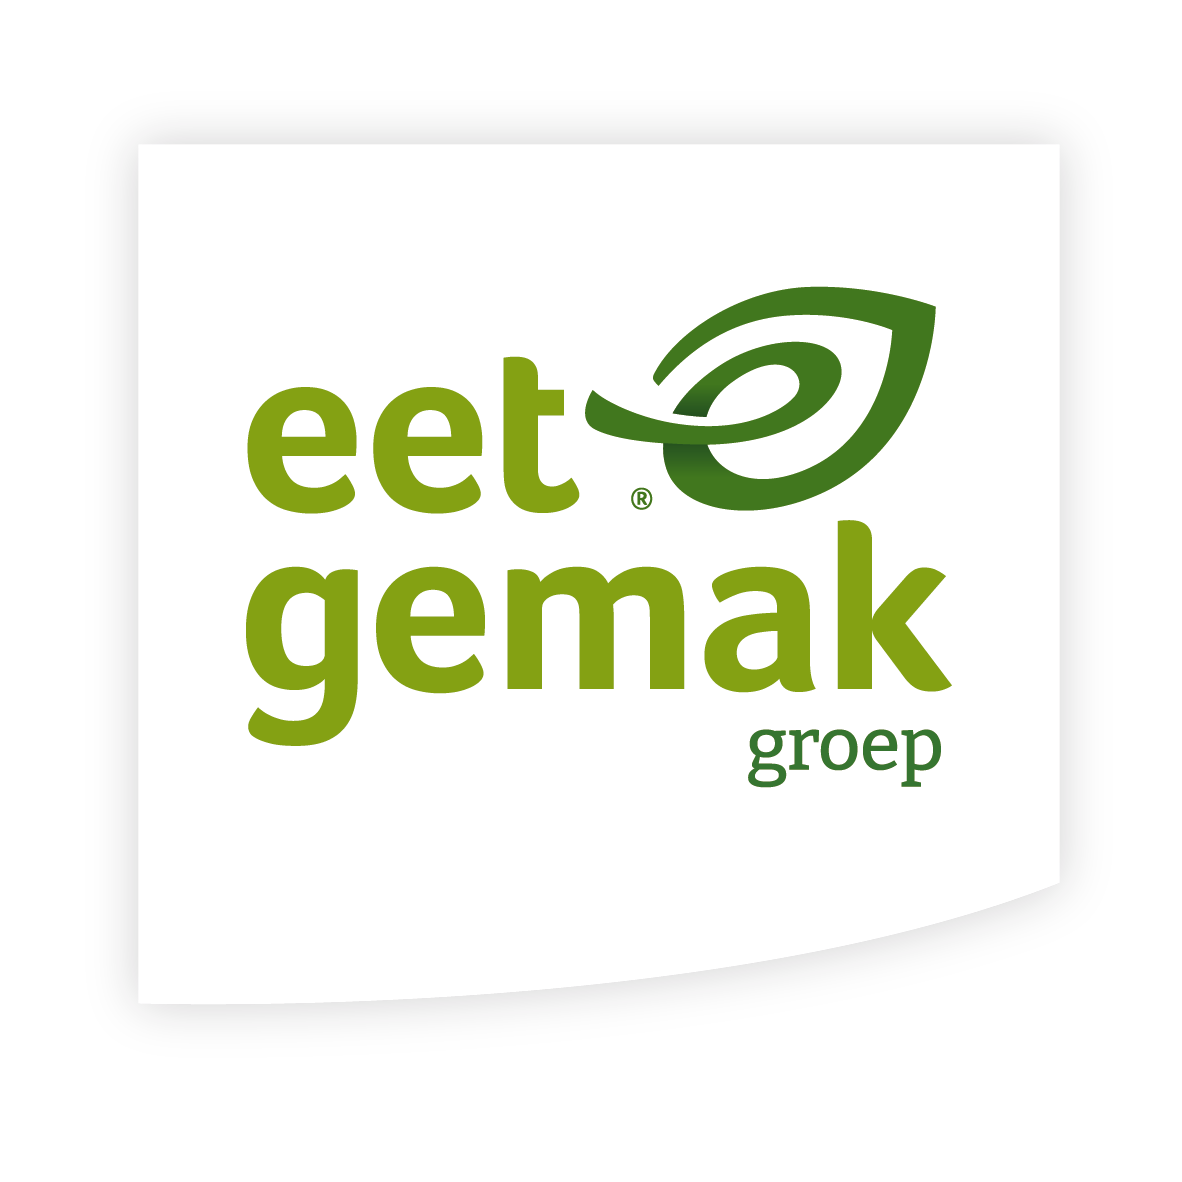 Eetgemak_groep-logo_metlabel